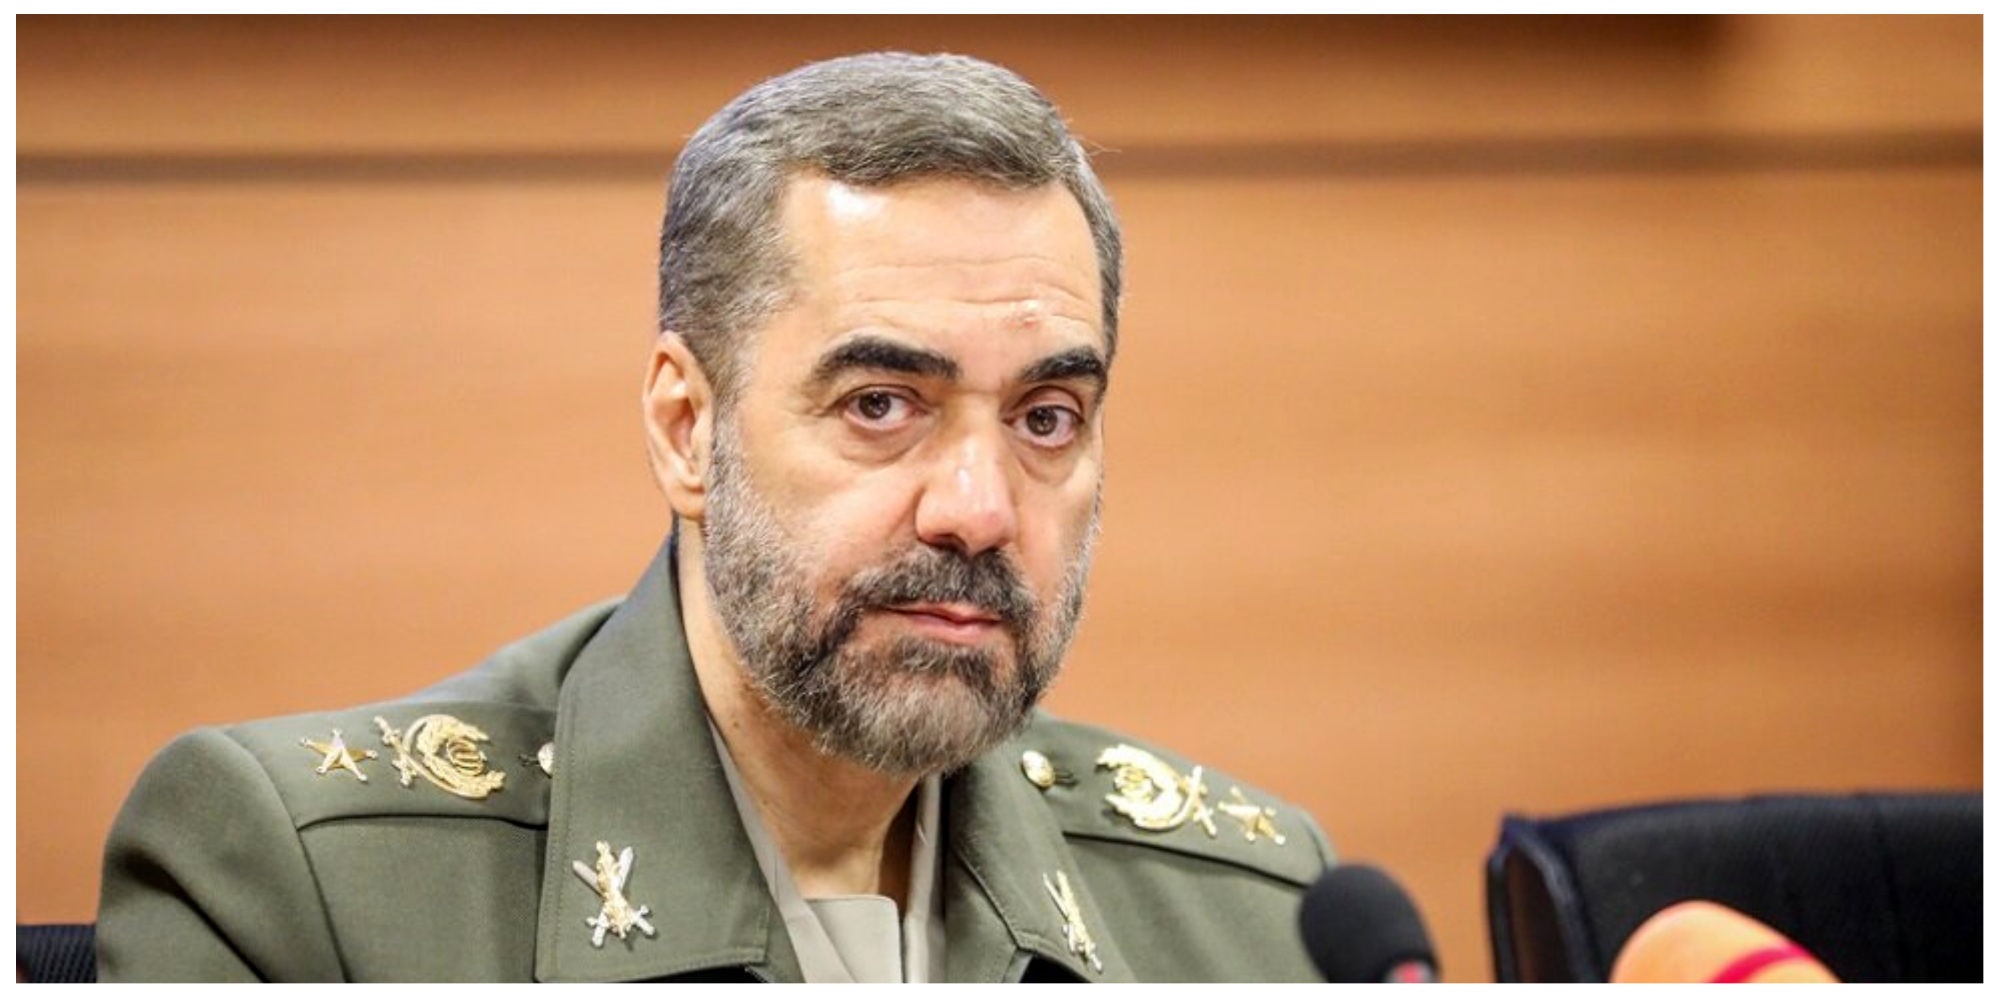 واکنش وزیر دفاع به احتمال وقوع جنگ در منطقه/ ماجرای آماده باش نیروهای مسلح در مرزها